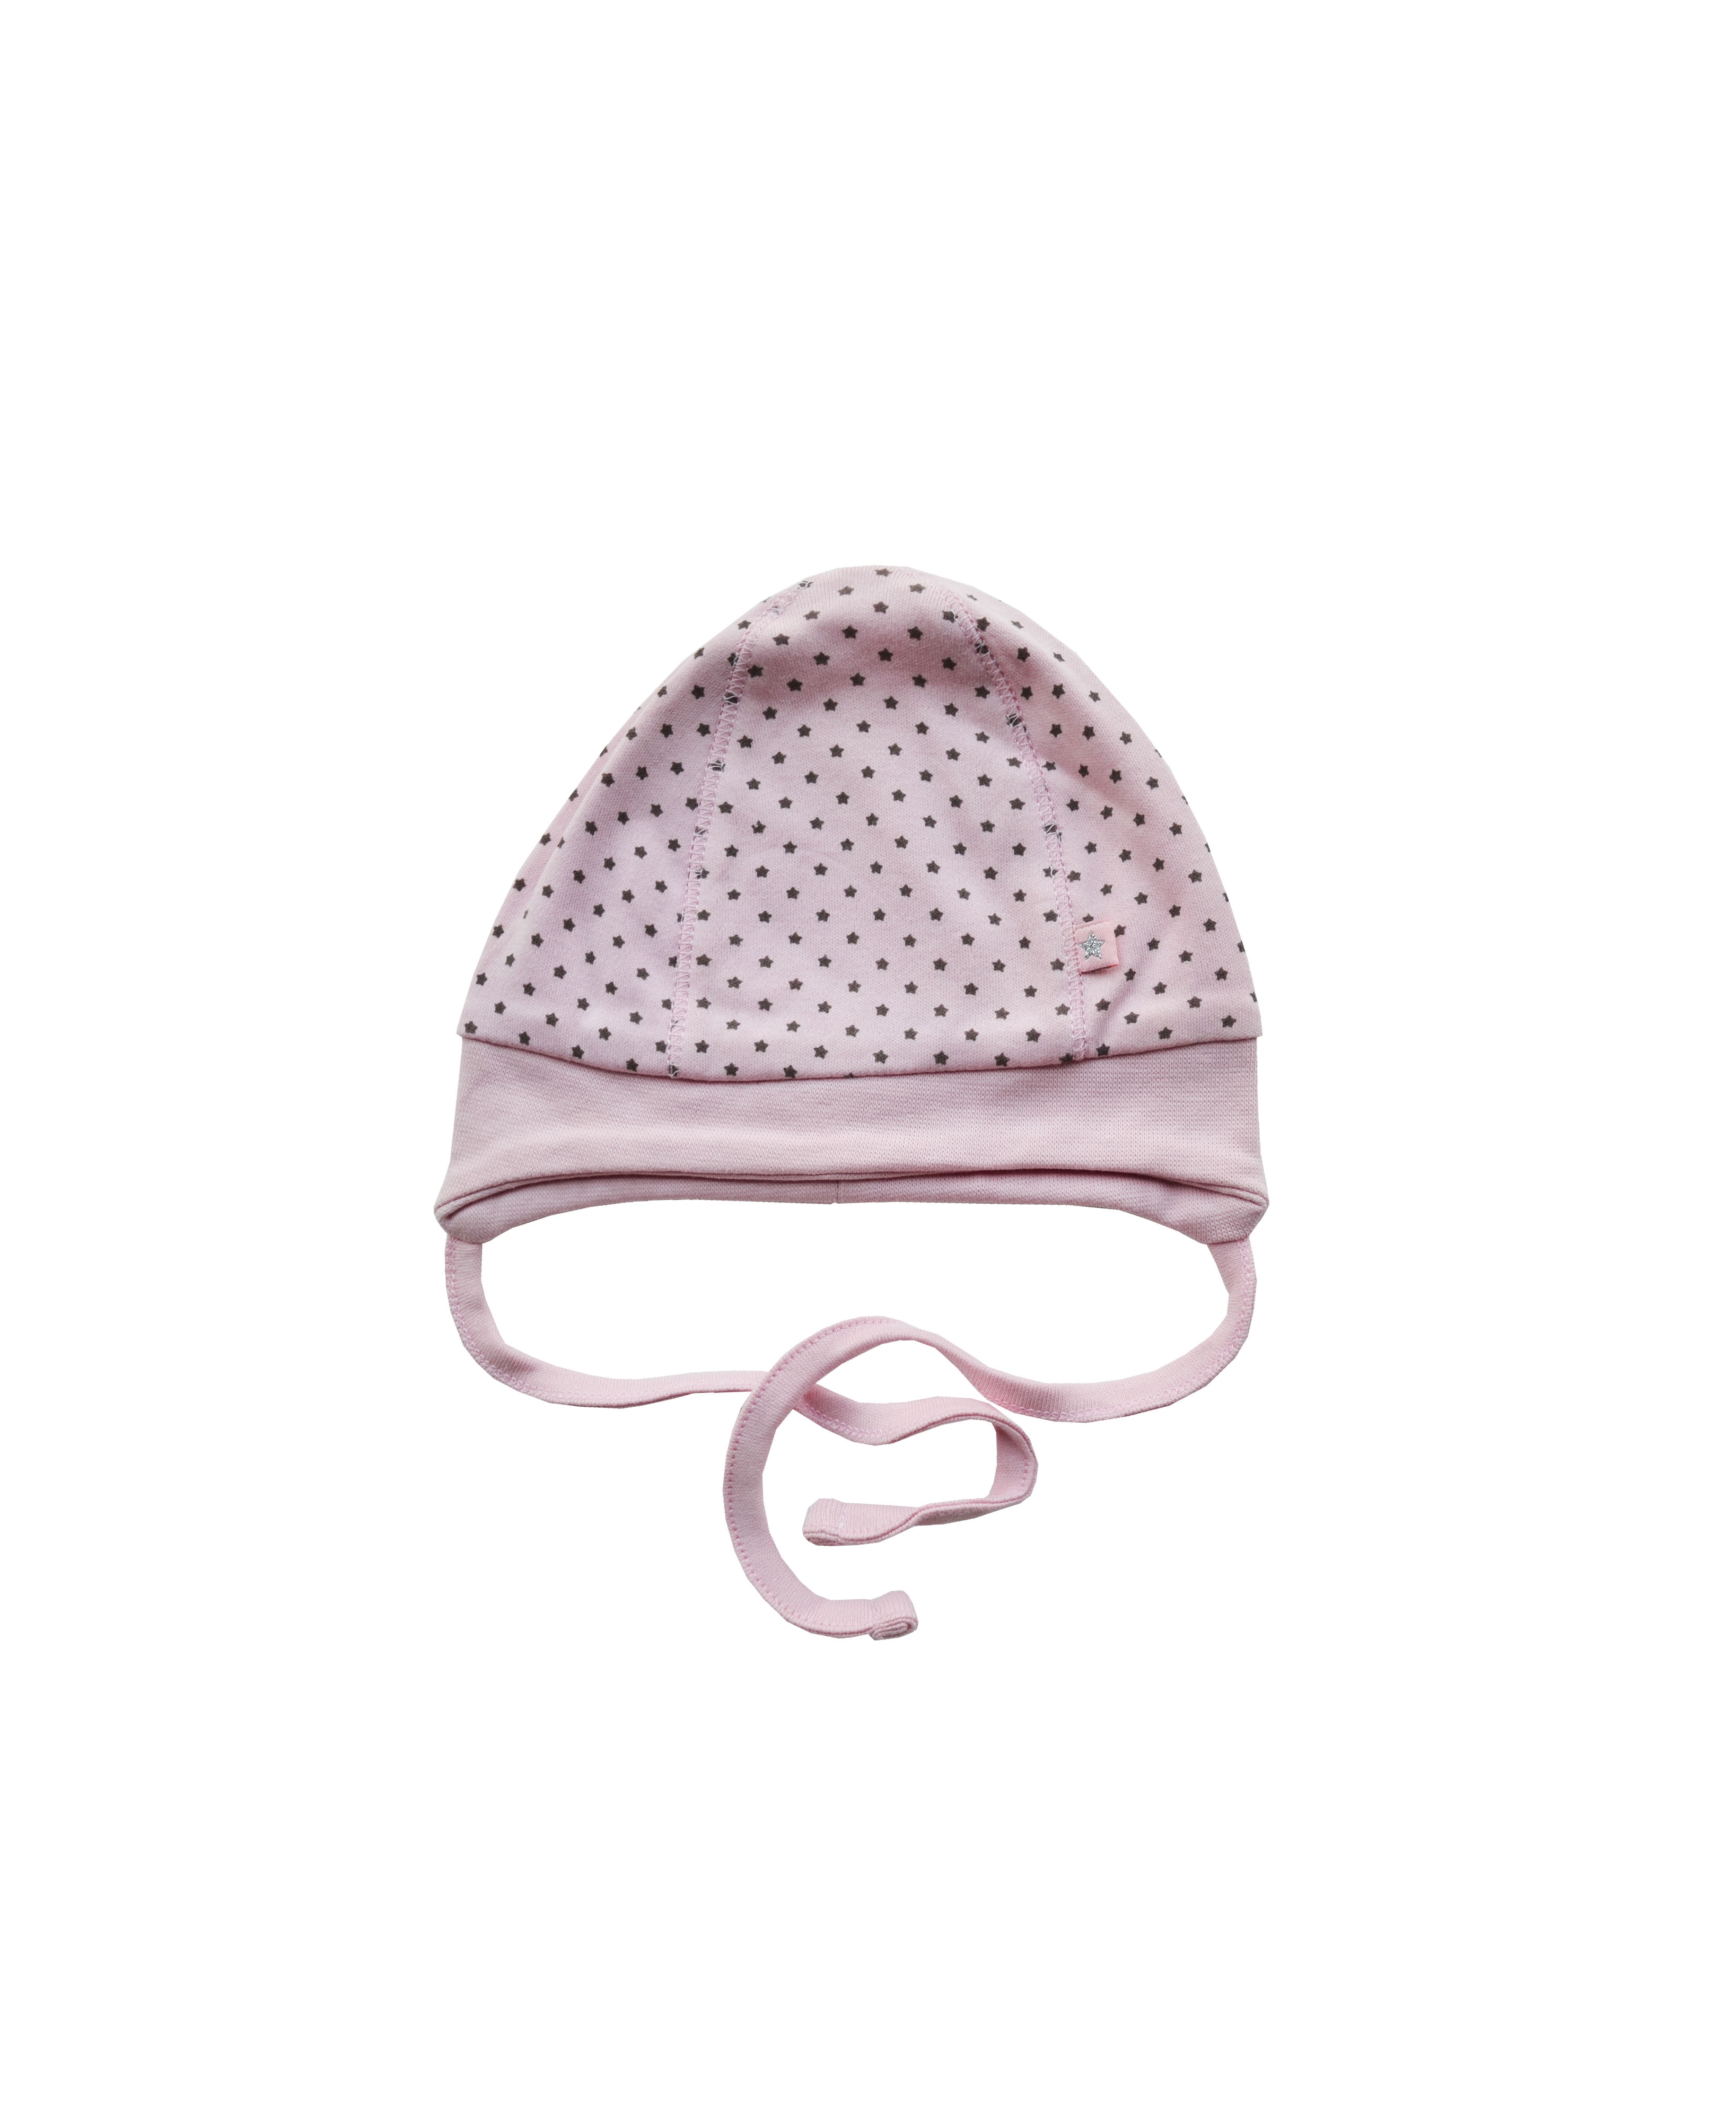 Babeez | Pink Cap with Grey Star Print (100% Cotton Interlock) undefined